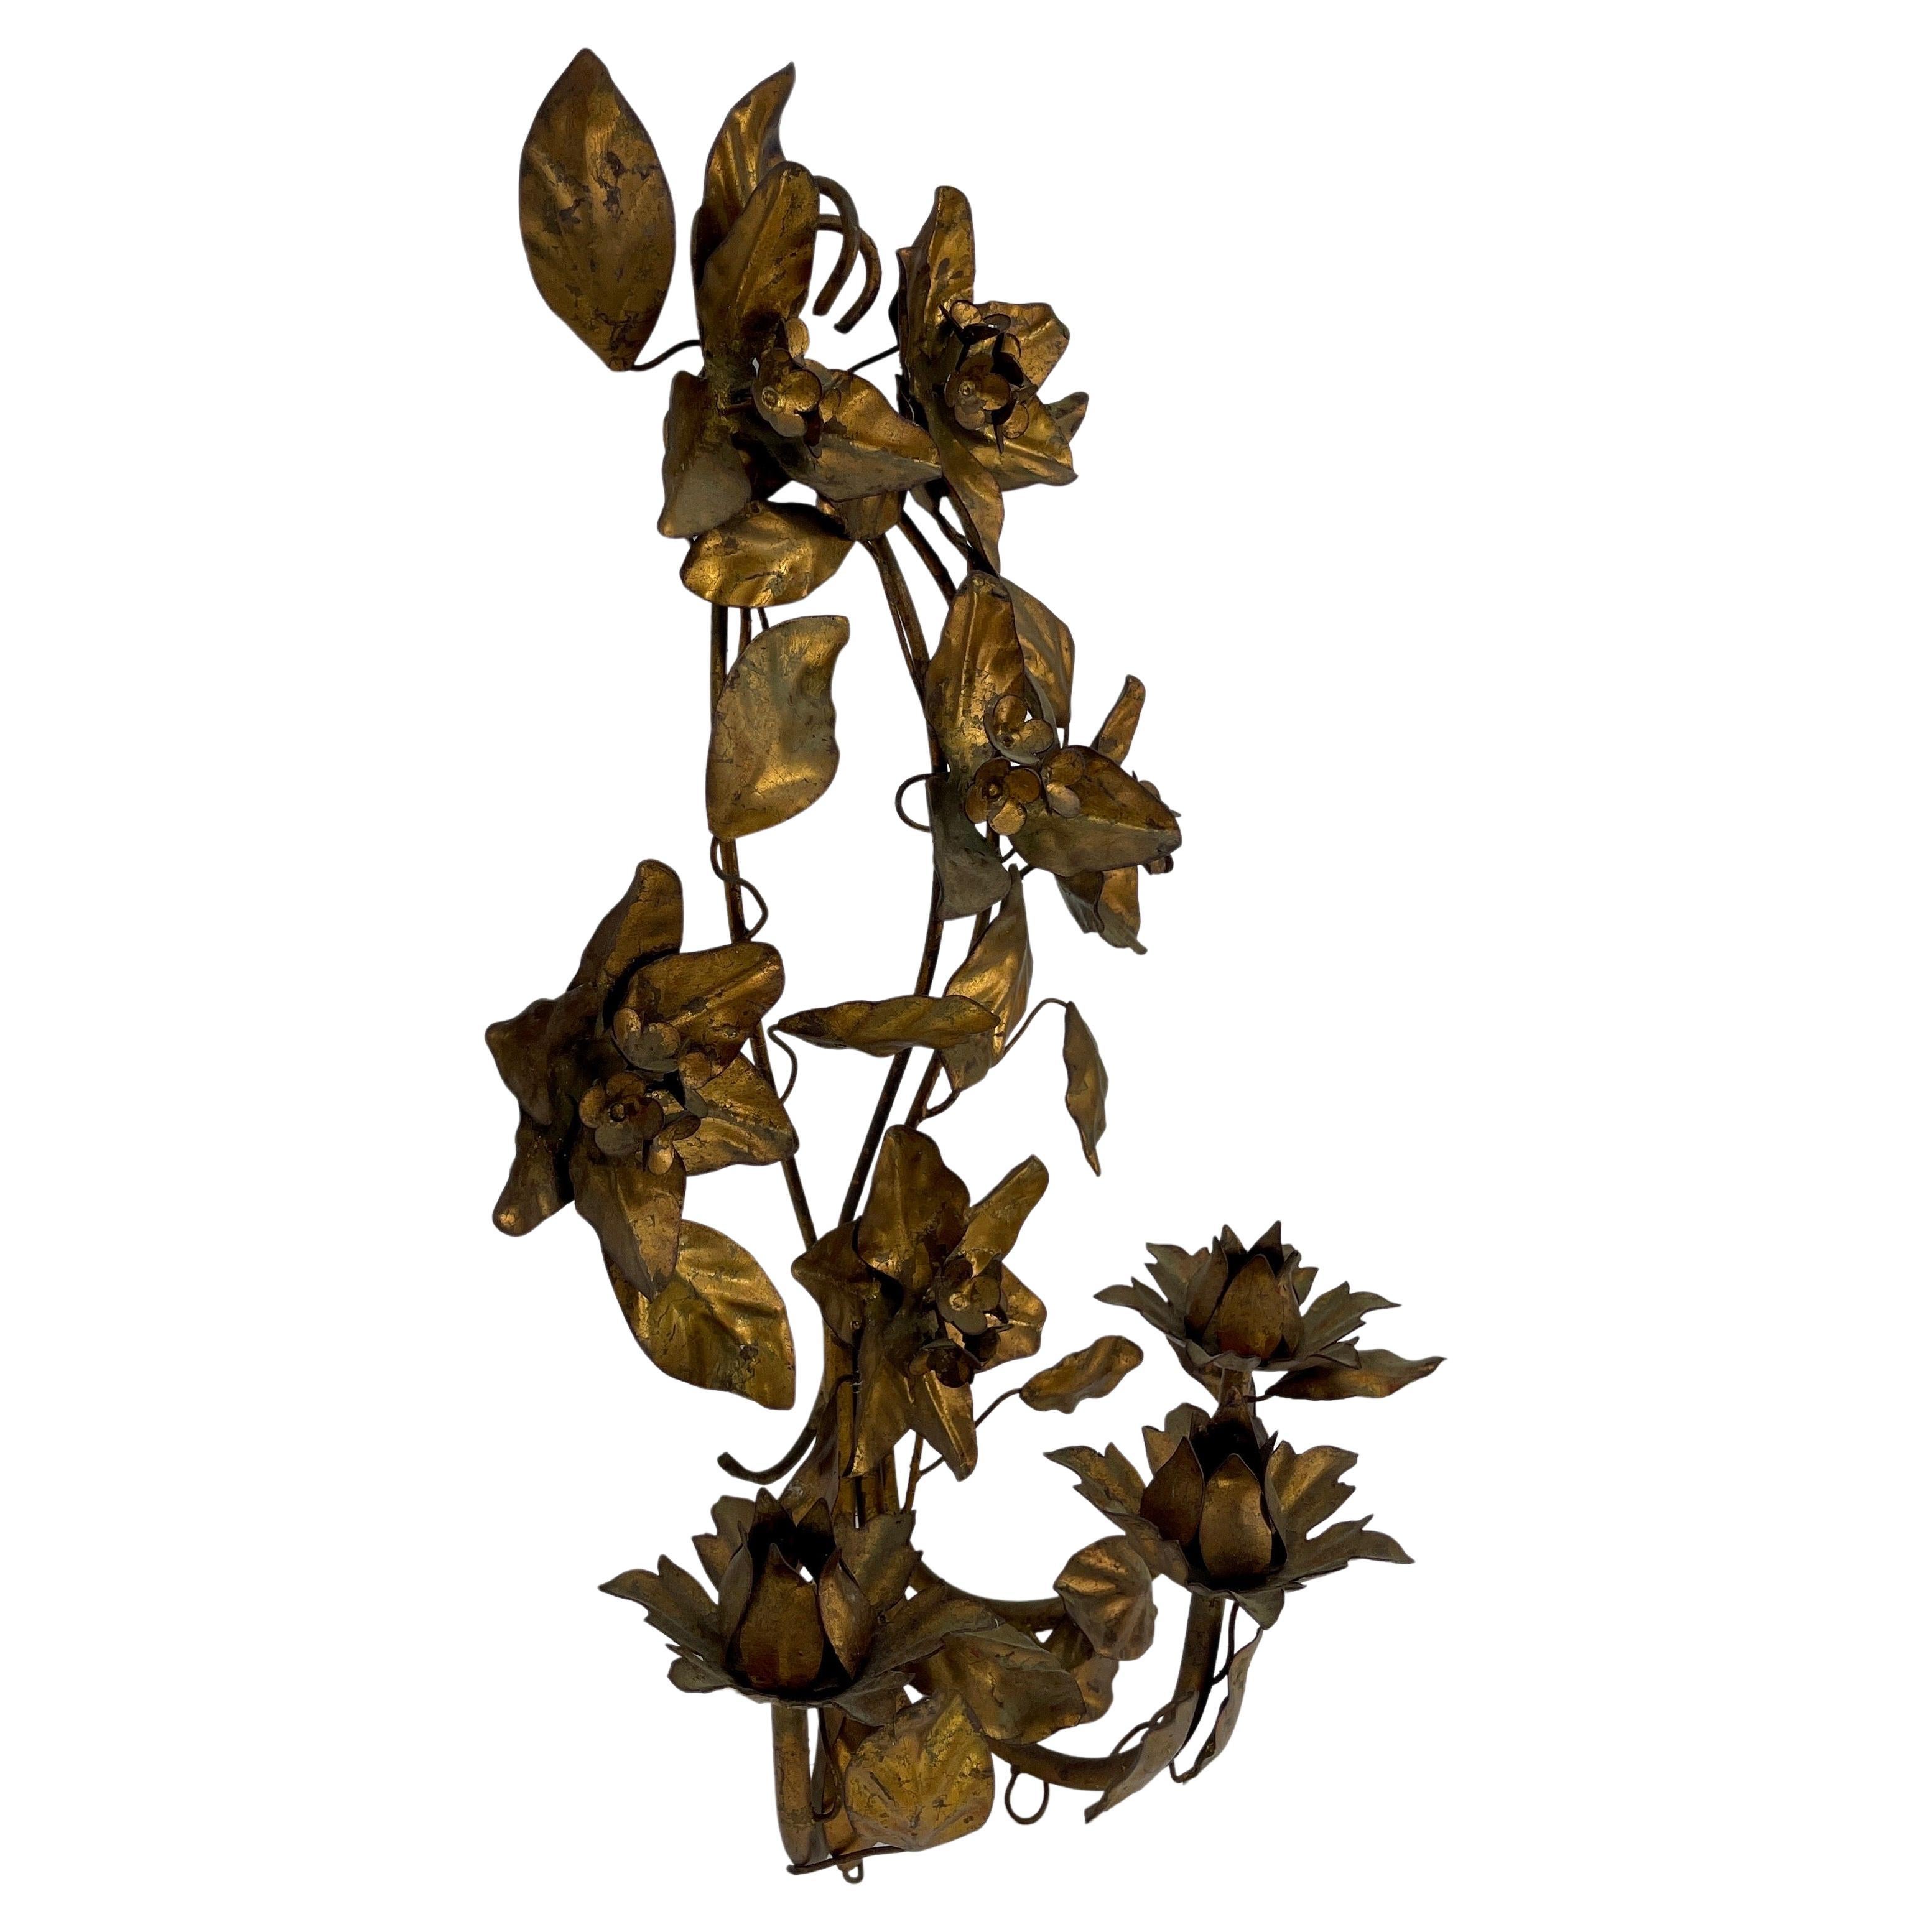 Vintage Gold vergoldet Tole Metall Wand florale Kerze Wandleuchter, Italien 

Elegante Wandkerzenleuchter mit schönen Blumendetails. Die handbemalte, vergoldete Oberfläche dieses Stücks hat ein sehr angenehmes, gealtertes Aussehen. Diese klassische